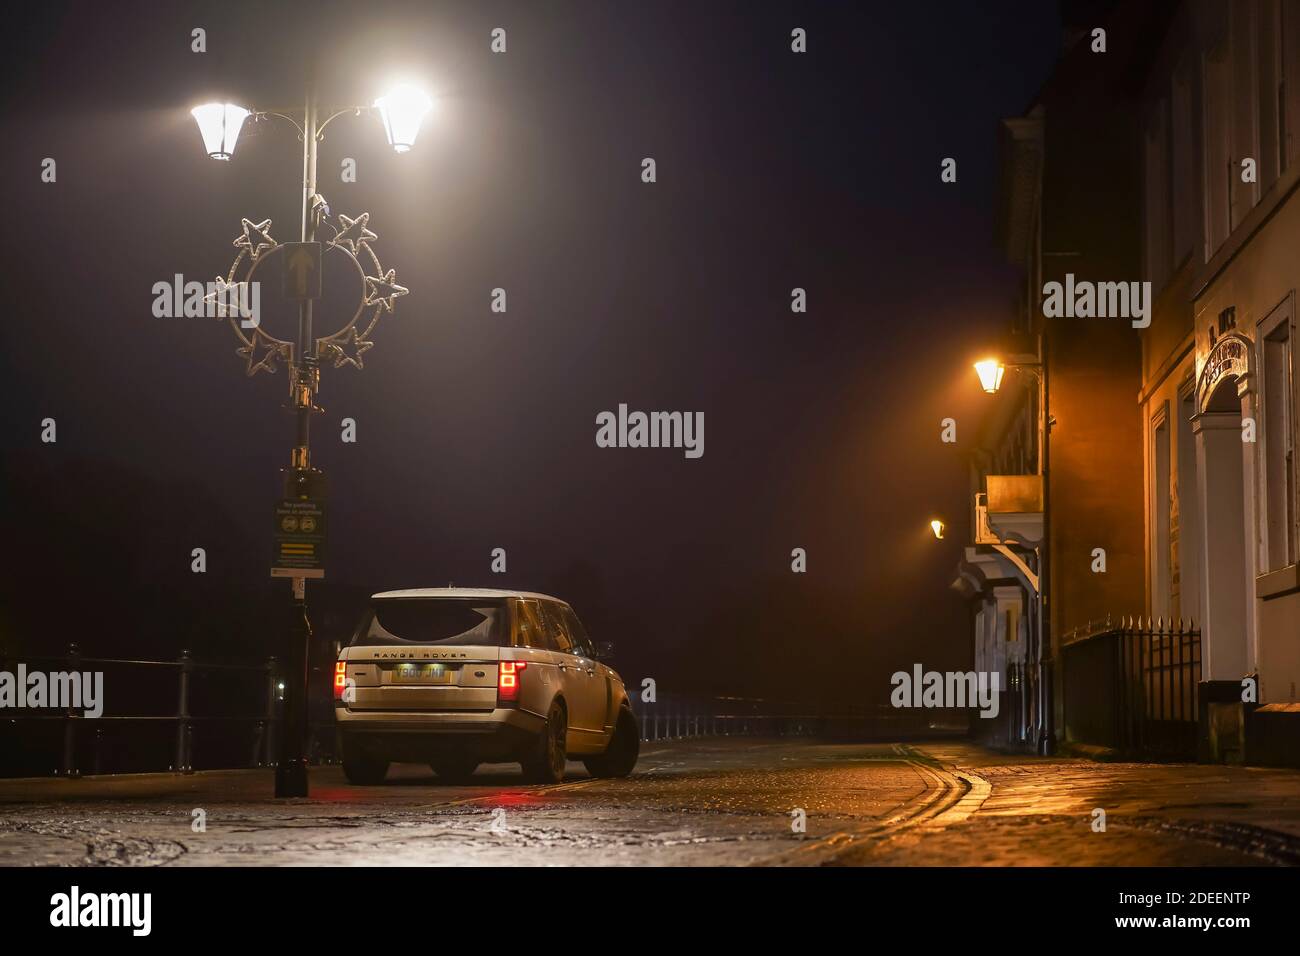 Der Range Rover parkte nachts in einer Straße mit Häusern in Großbritannien zur Weihnachtszeit unter einer Straßenlaterne. Stockfoto